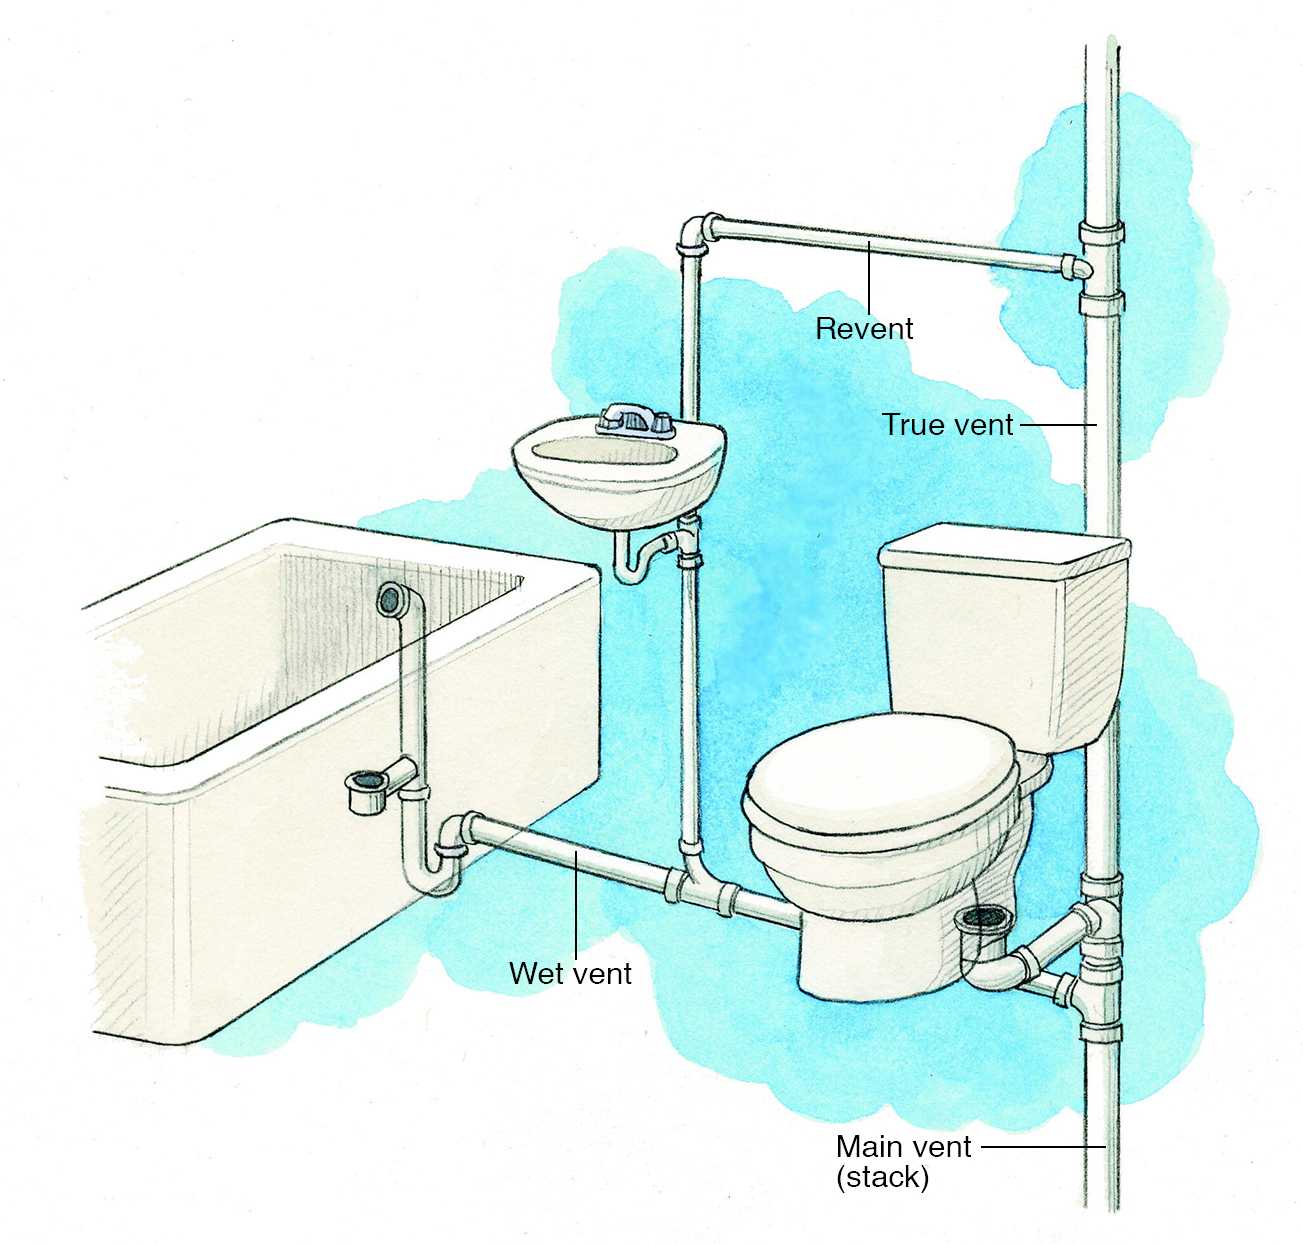 Схема канализации в ванной комнате